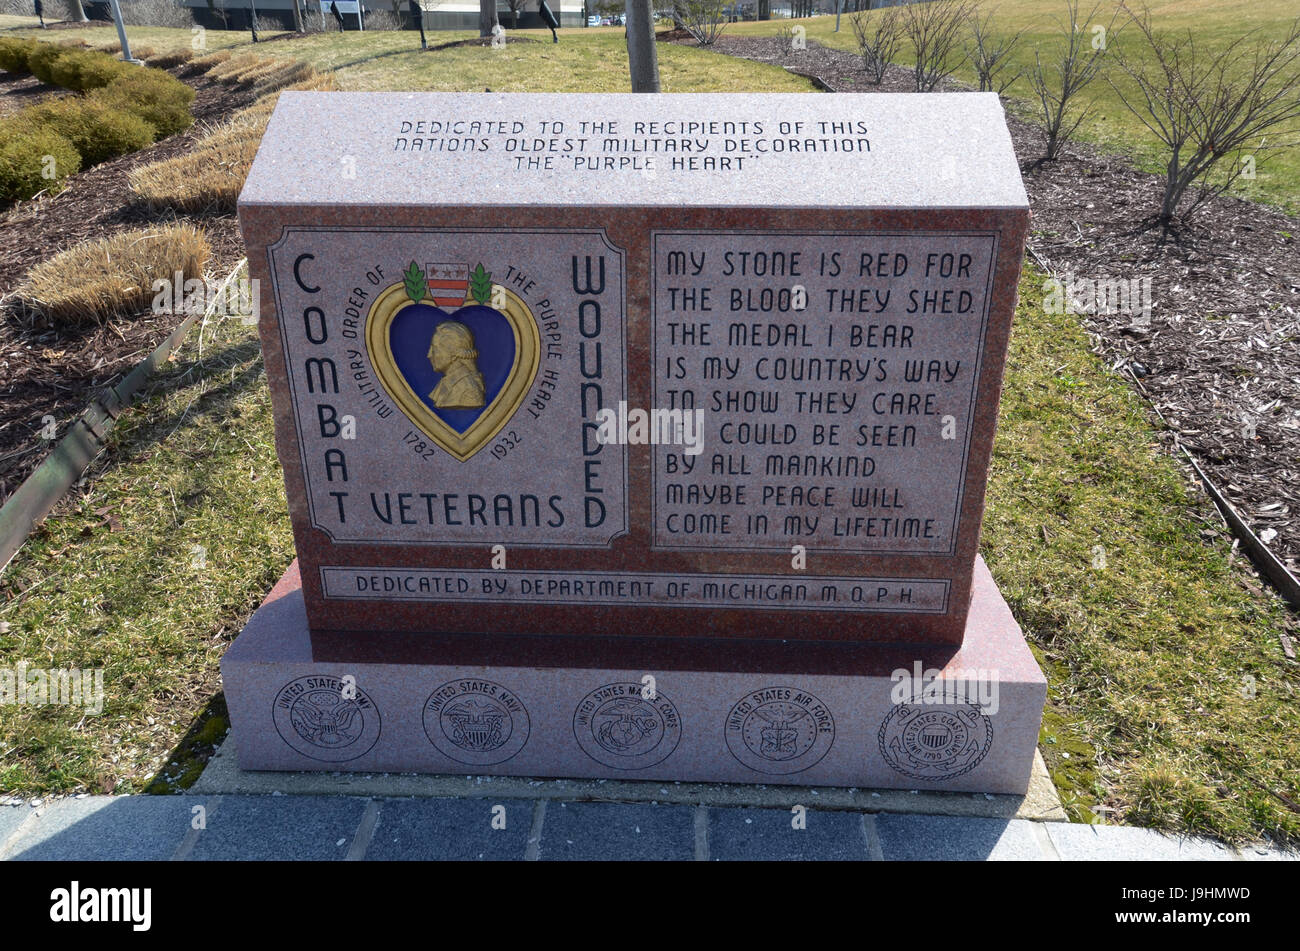 LANSING, MI - 26 de marzo: El herido en combate Veterans Memorial, se muestra aquí el 26 de marzo de 2016, rinde homenaje a los veteranos que han recibido la Medalla del Corazón Púrpura. Foto de stock